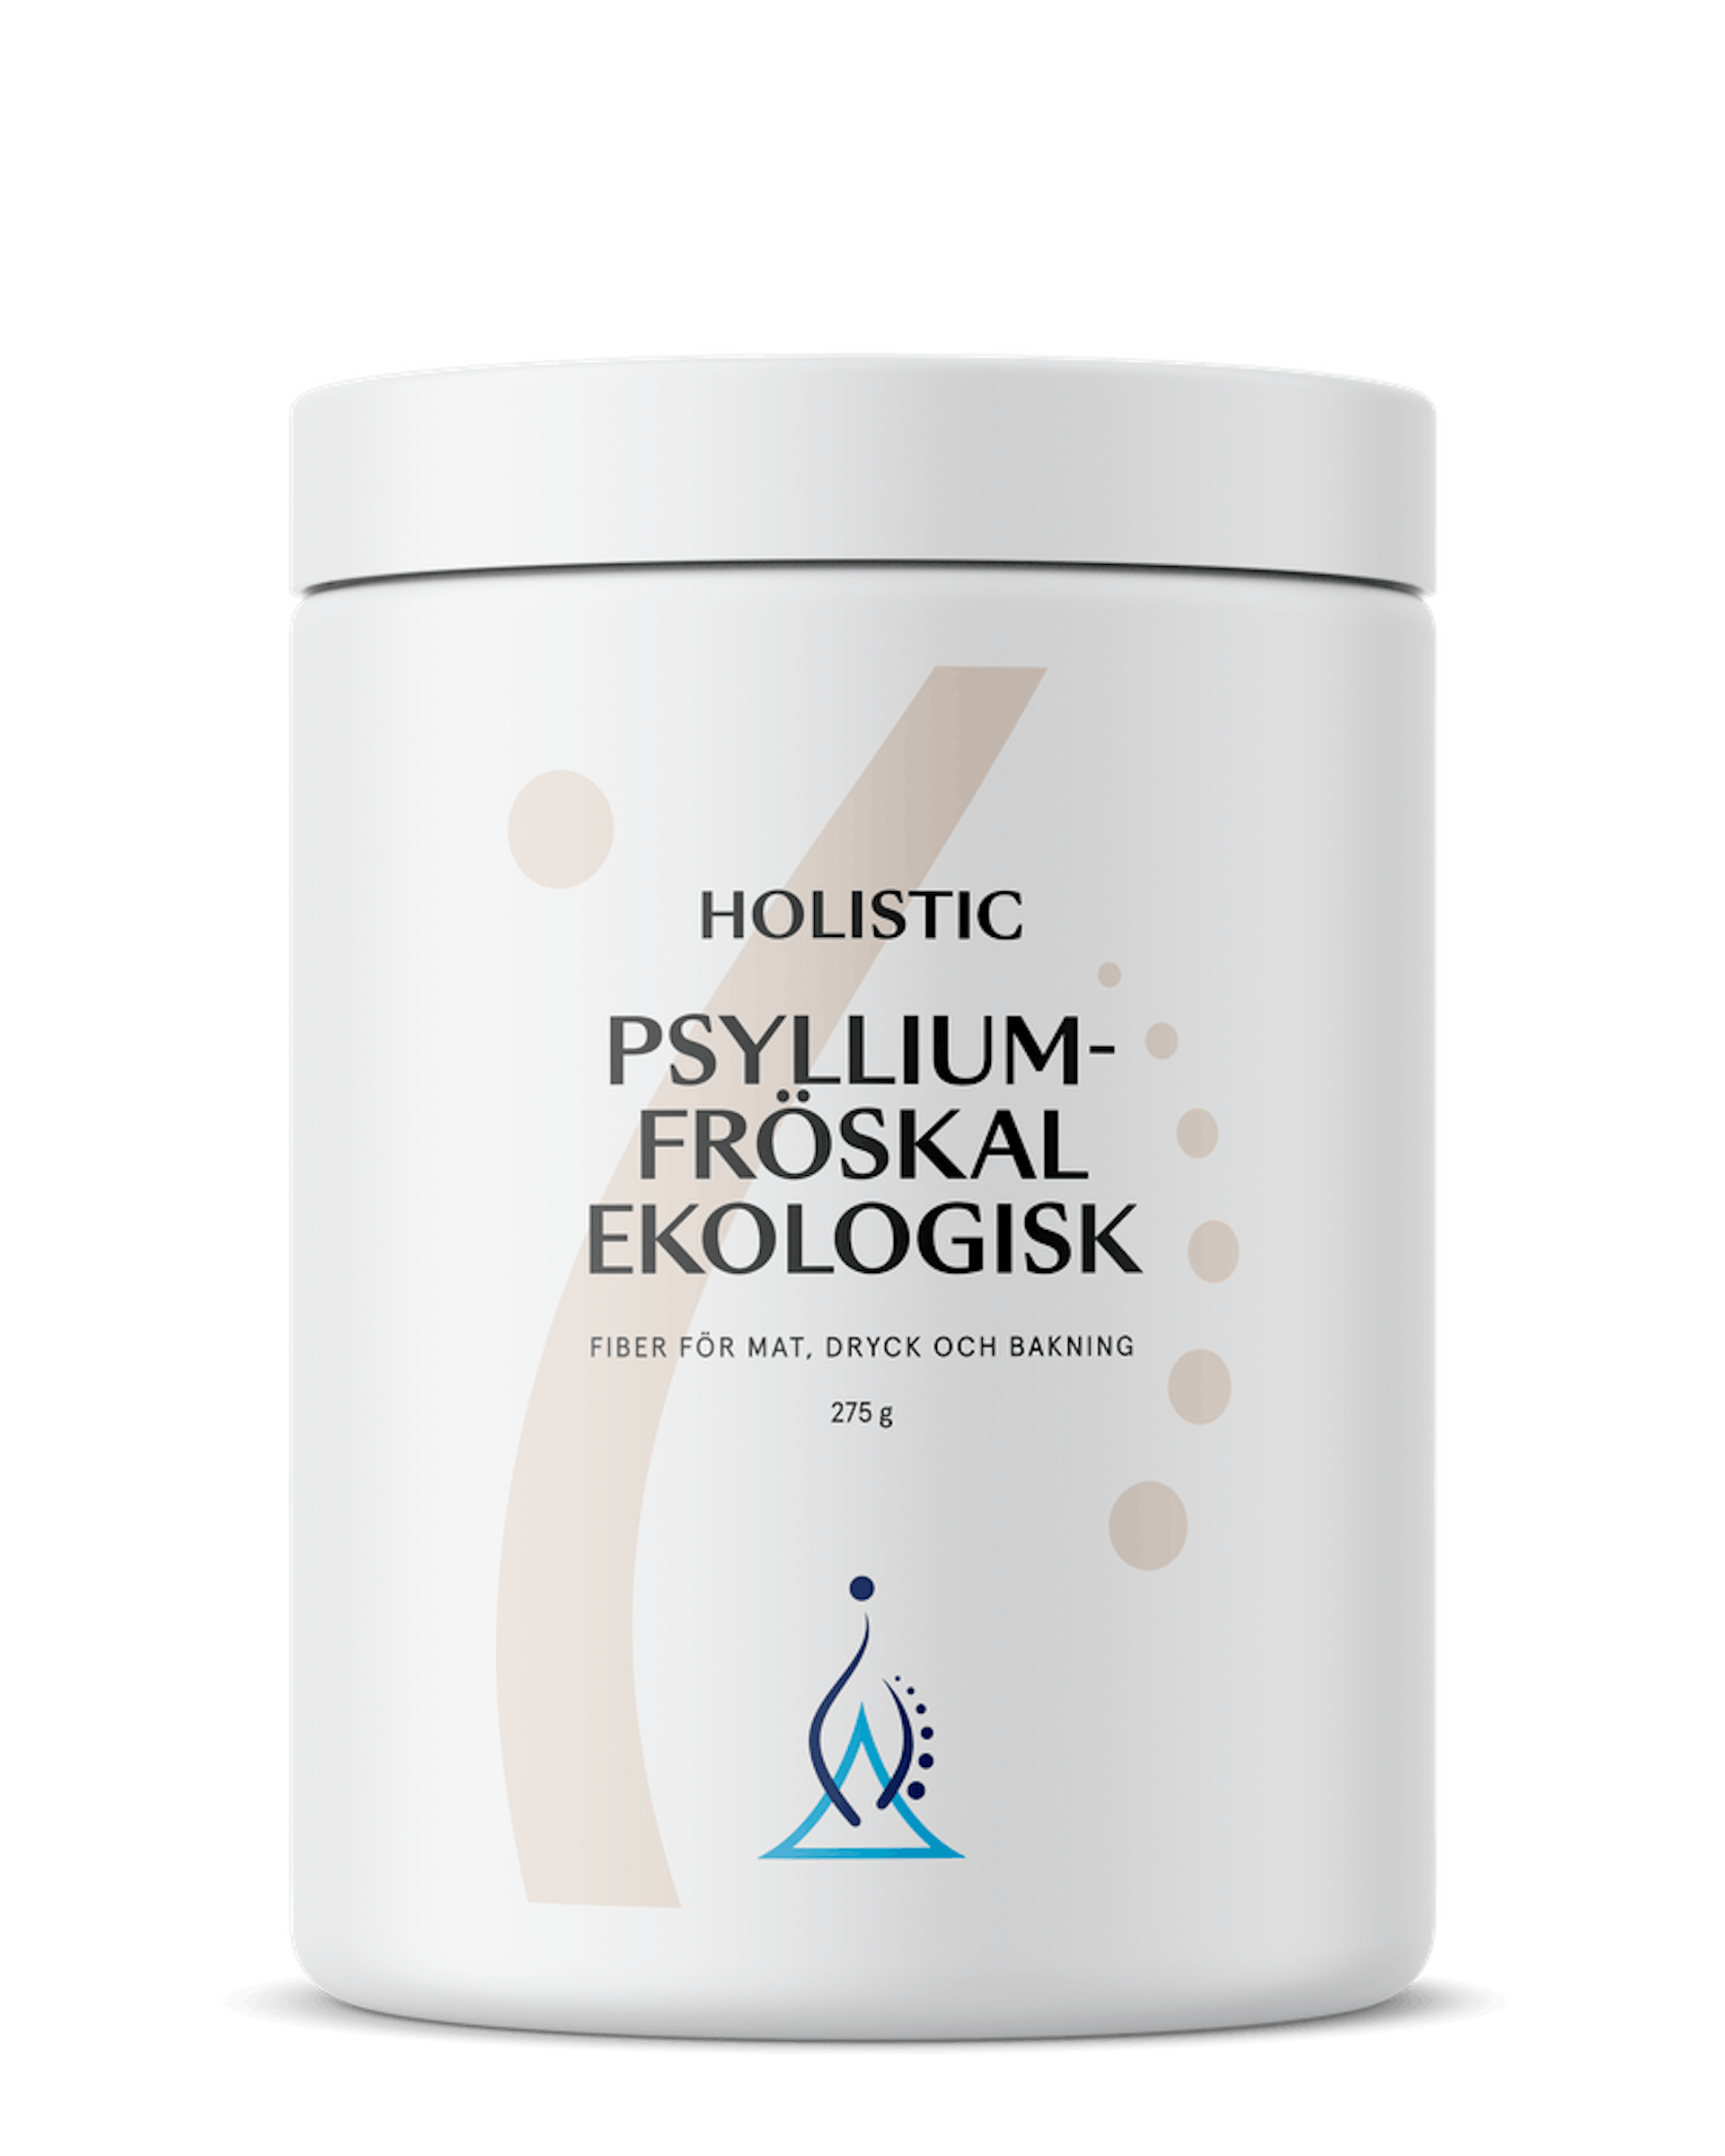 Psylliumfröskal ekologisk, 275 g (1 av 1)